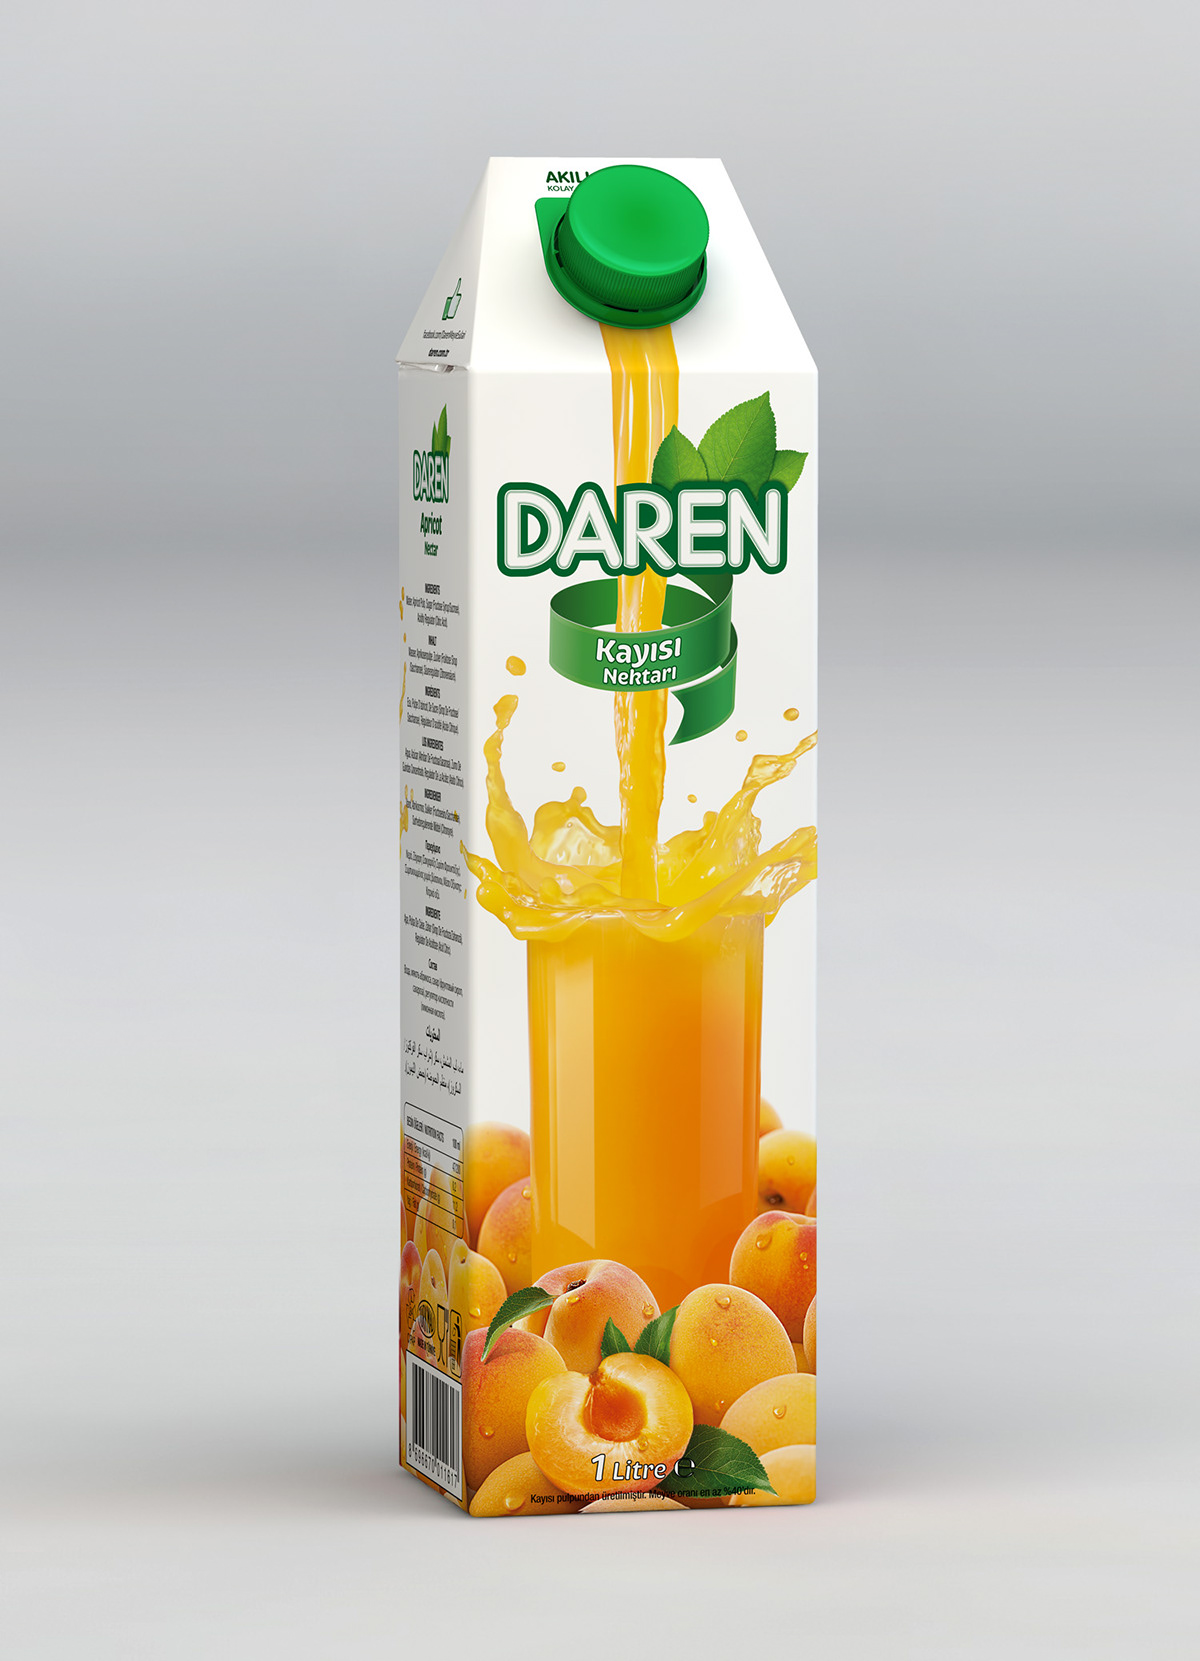 Daren fruit juice Meyve Suyu package design  Paket Tasarımı Gürkan Bayındır